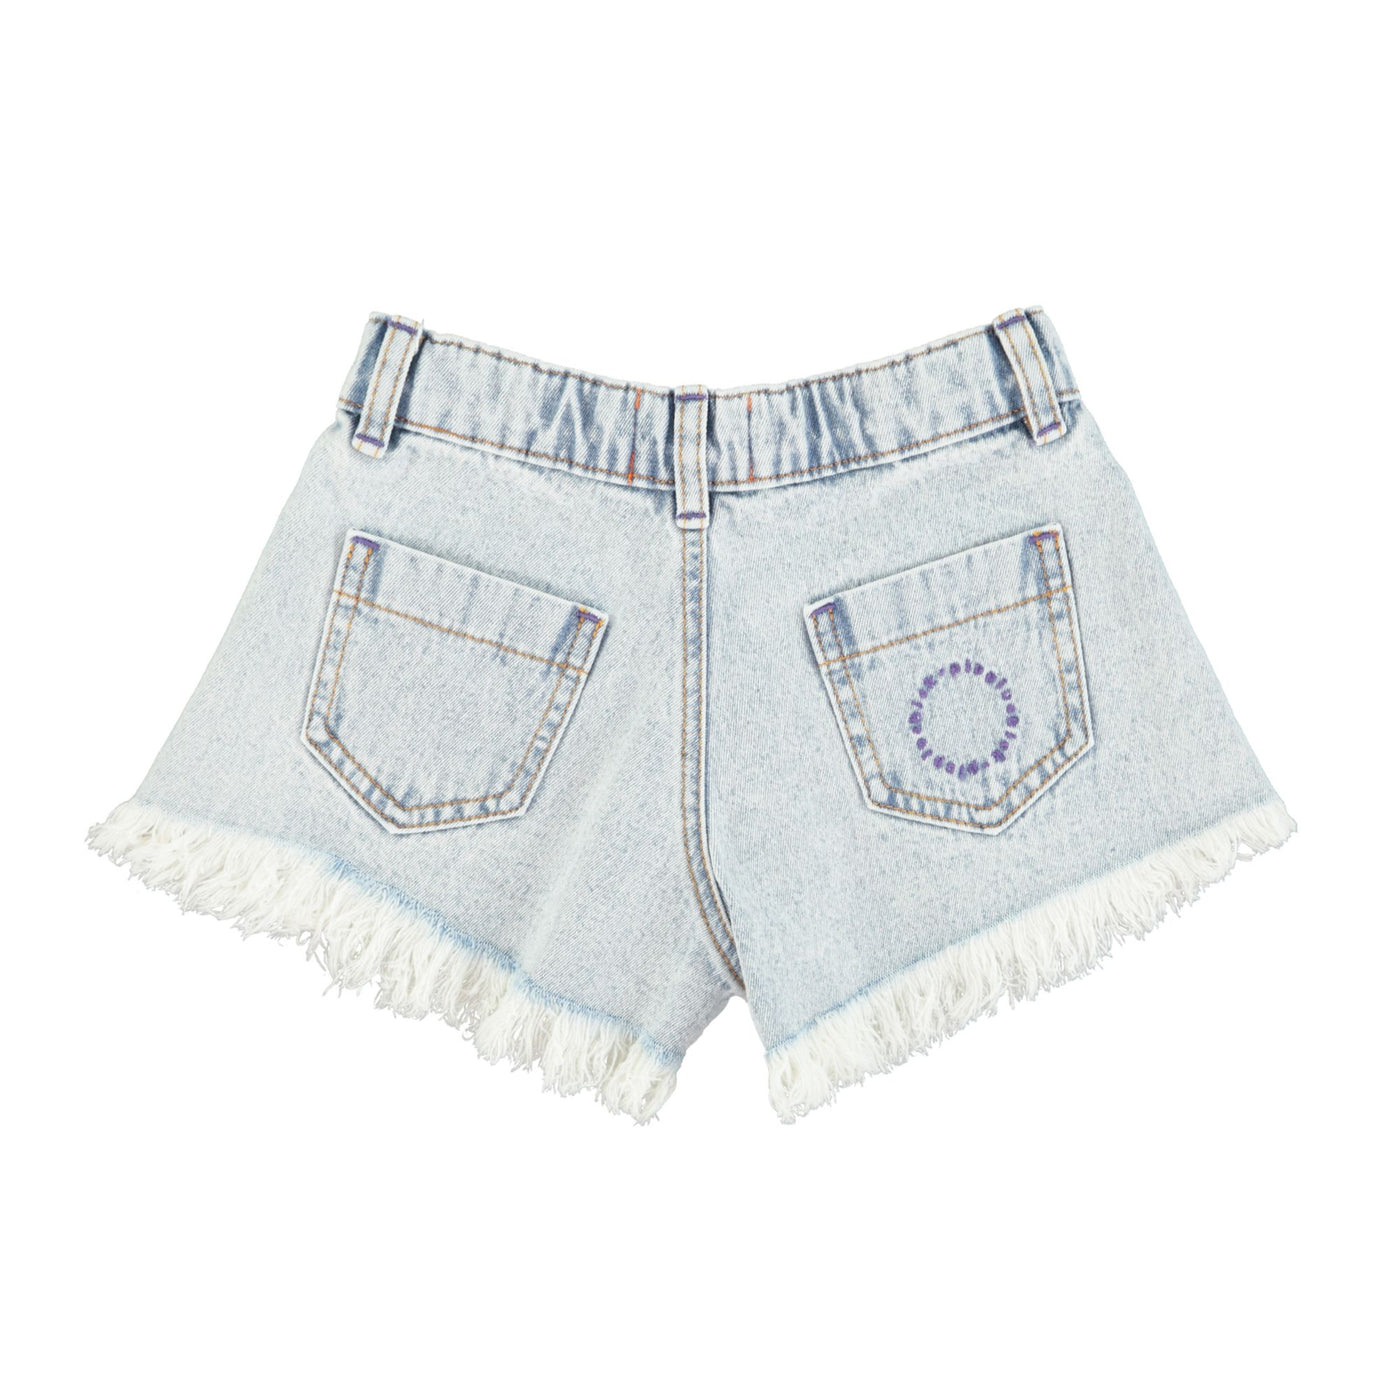 Piupiuchick shorts w/ fringes washed blue denim